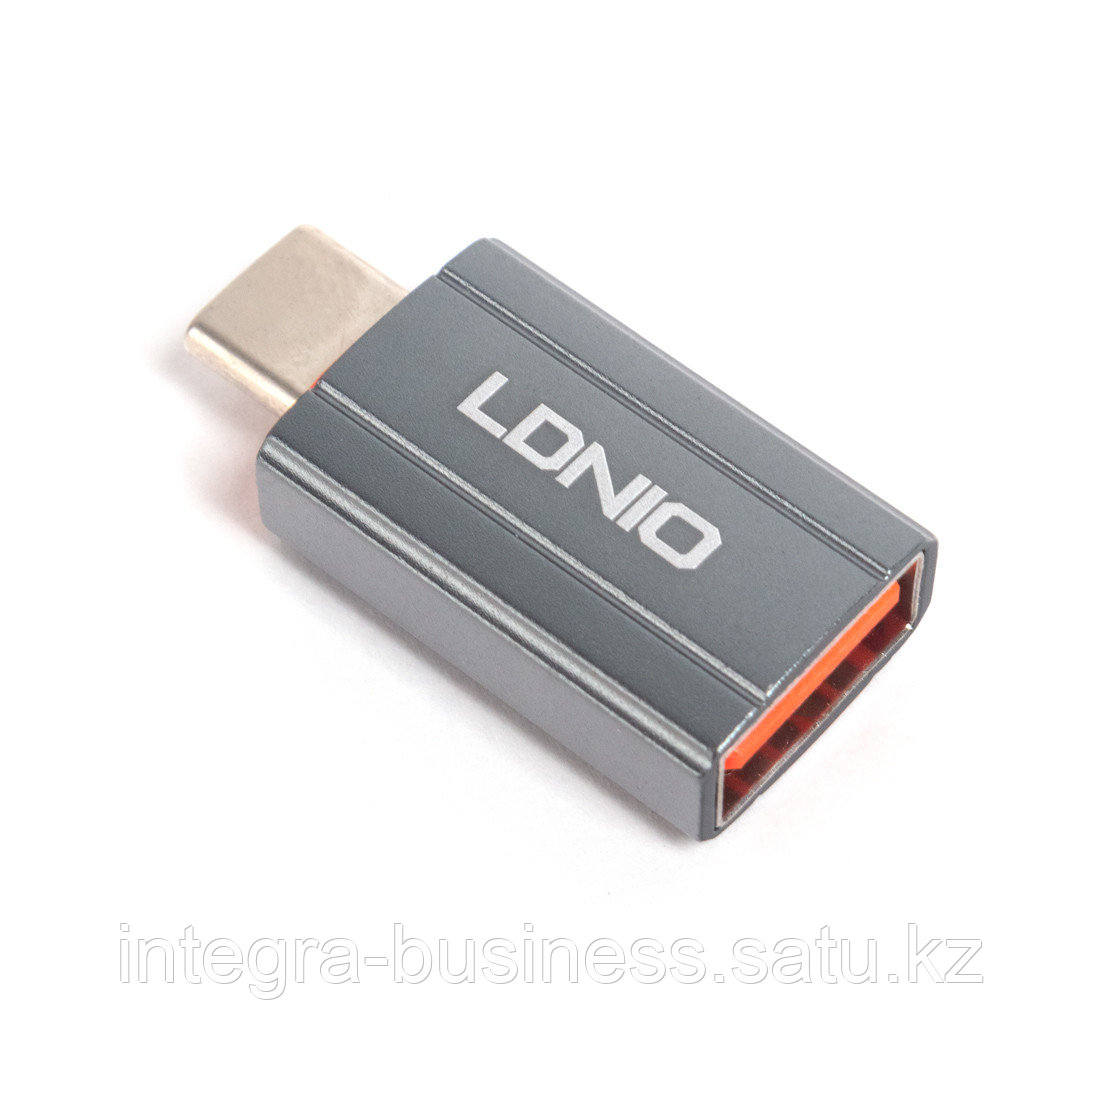 Переходник LDNIO LC140 USB A на USB Type-C Адаптер Серый, фото 1